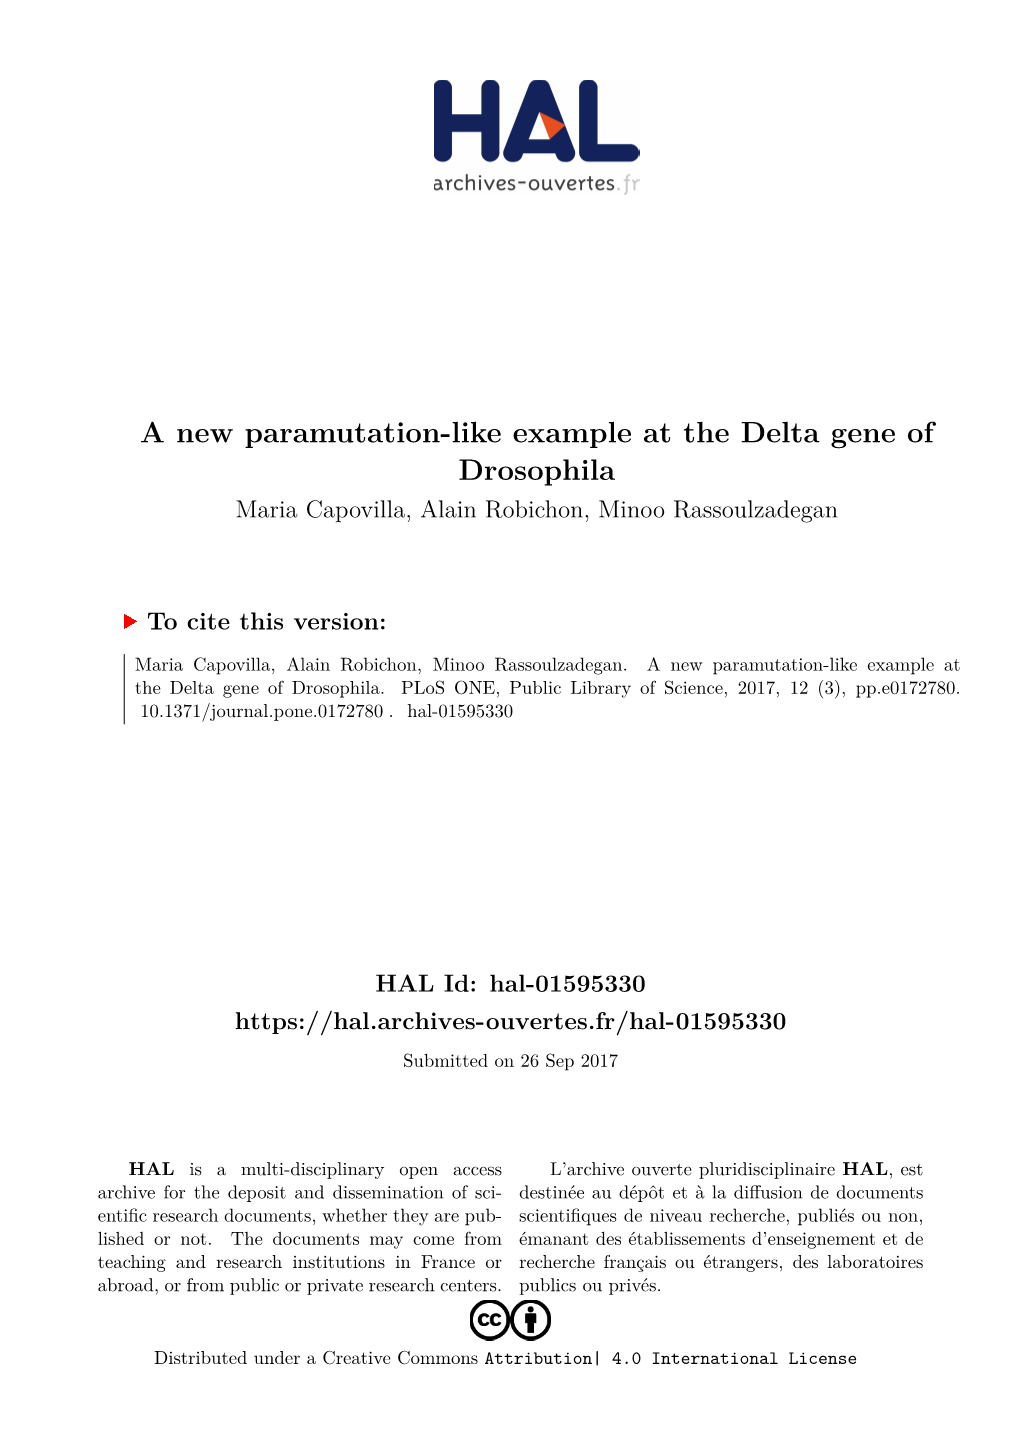 A New Paramutation-Like Example at the Delta Gene of Drosophila Maria Capovilla, Alain Robichon, Minoo Rassoulzadegan